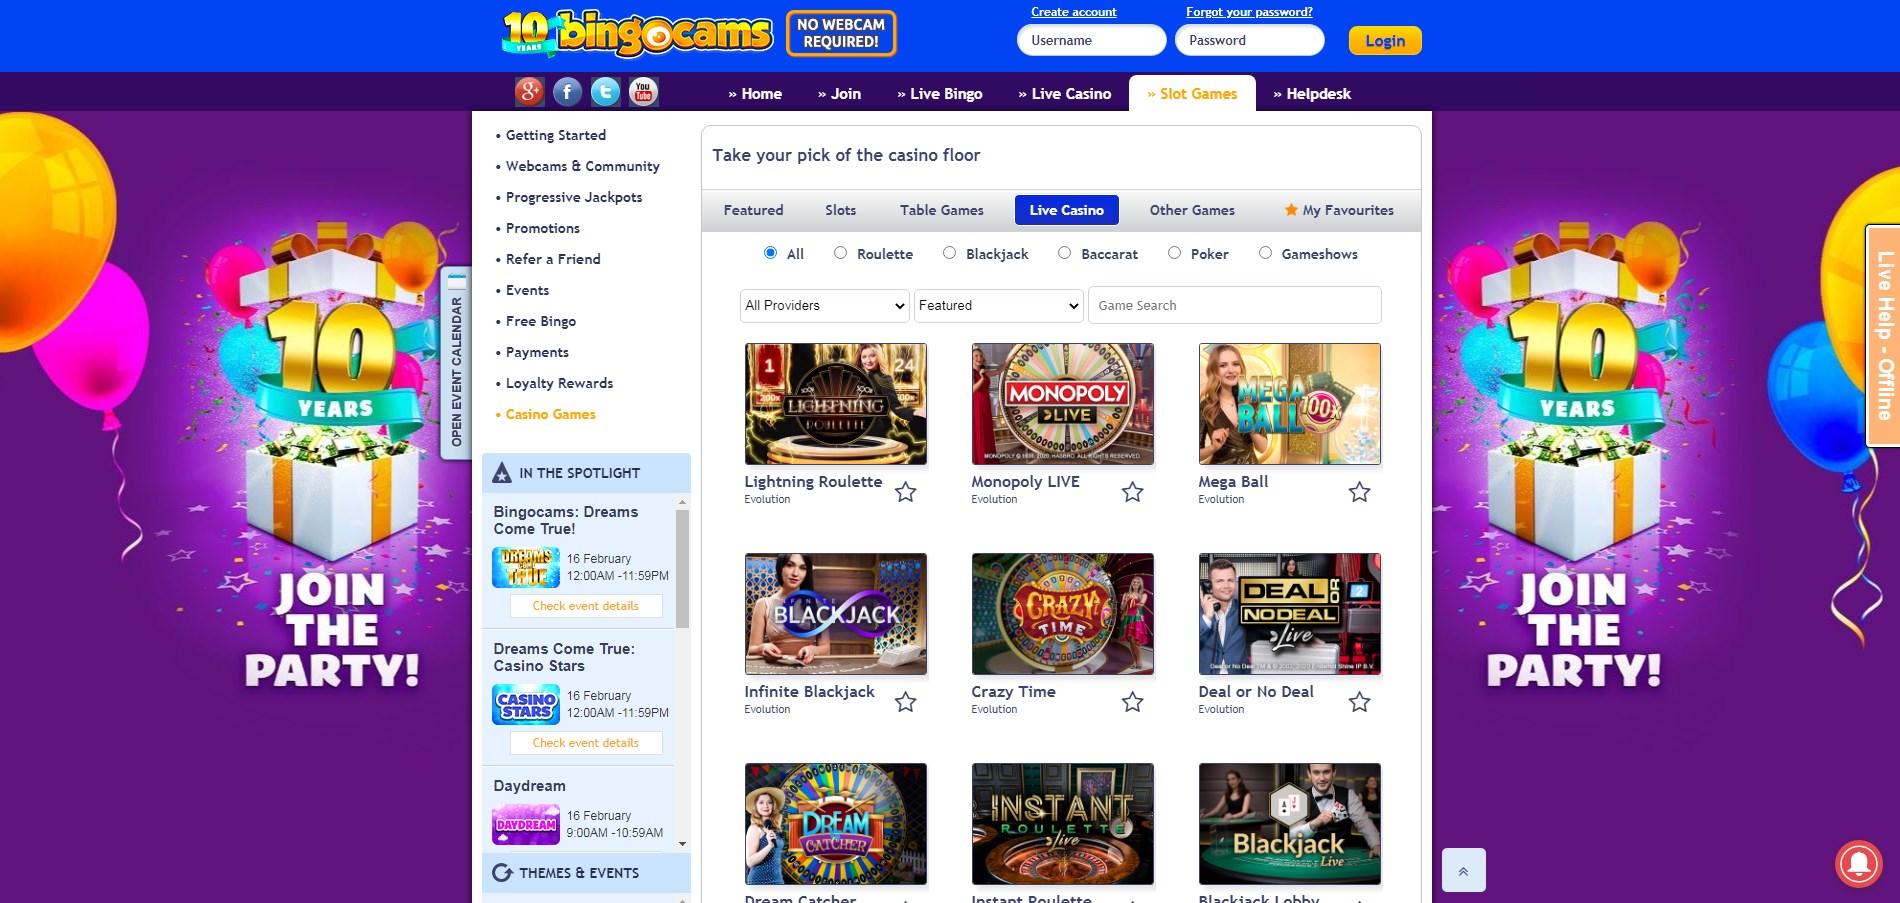 Bingocams Casino Live Dealer Games